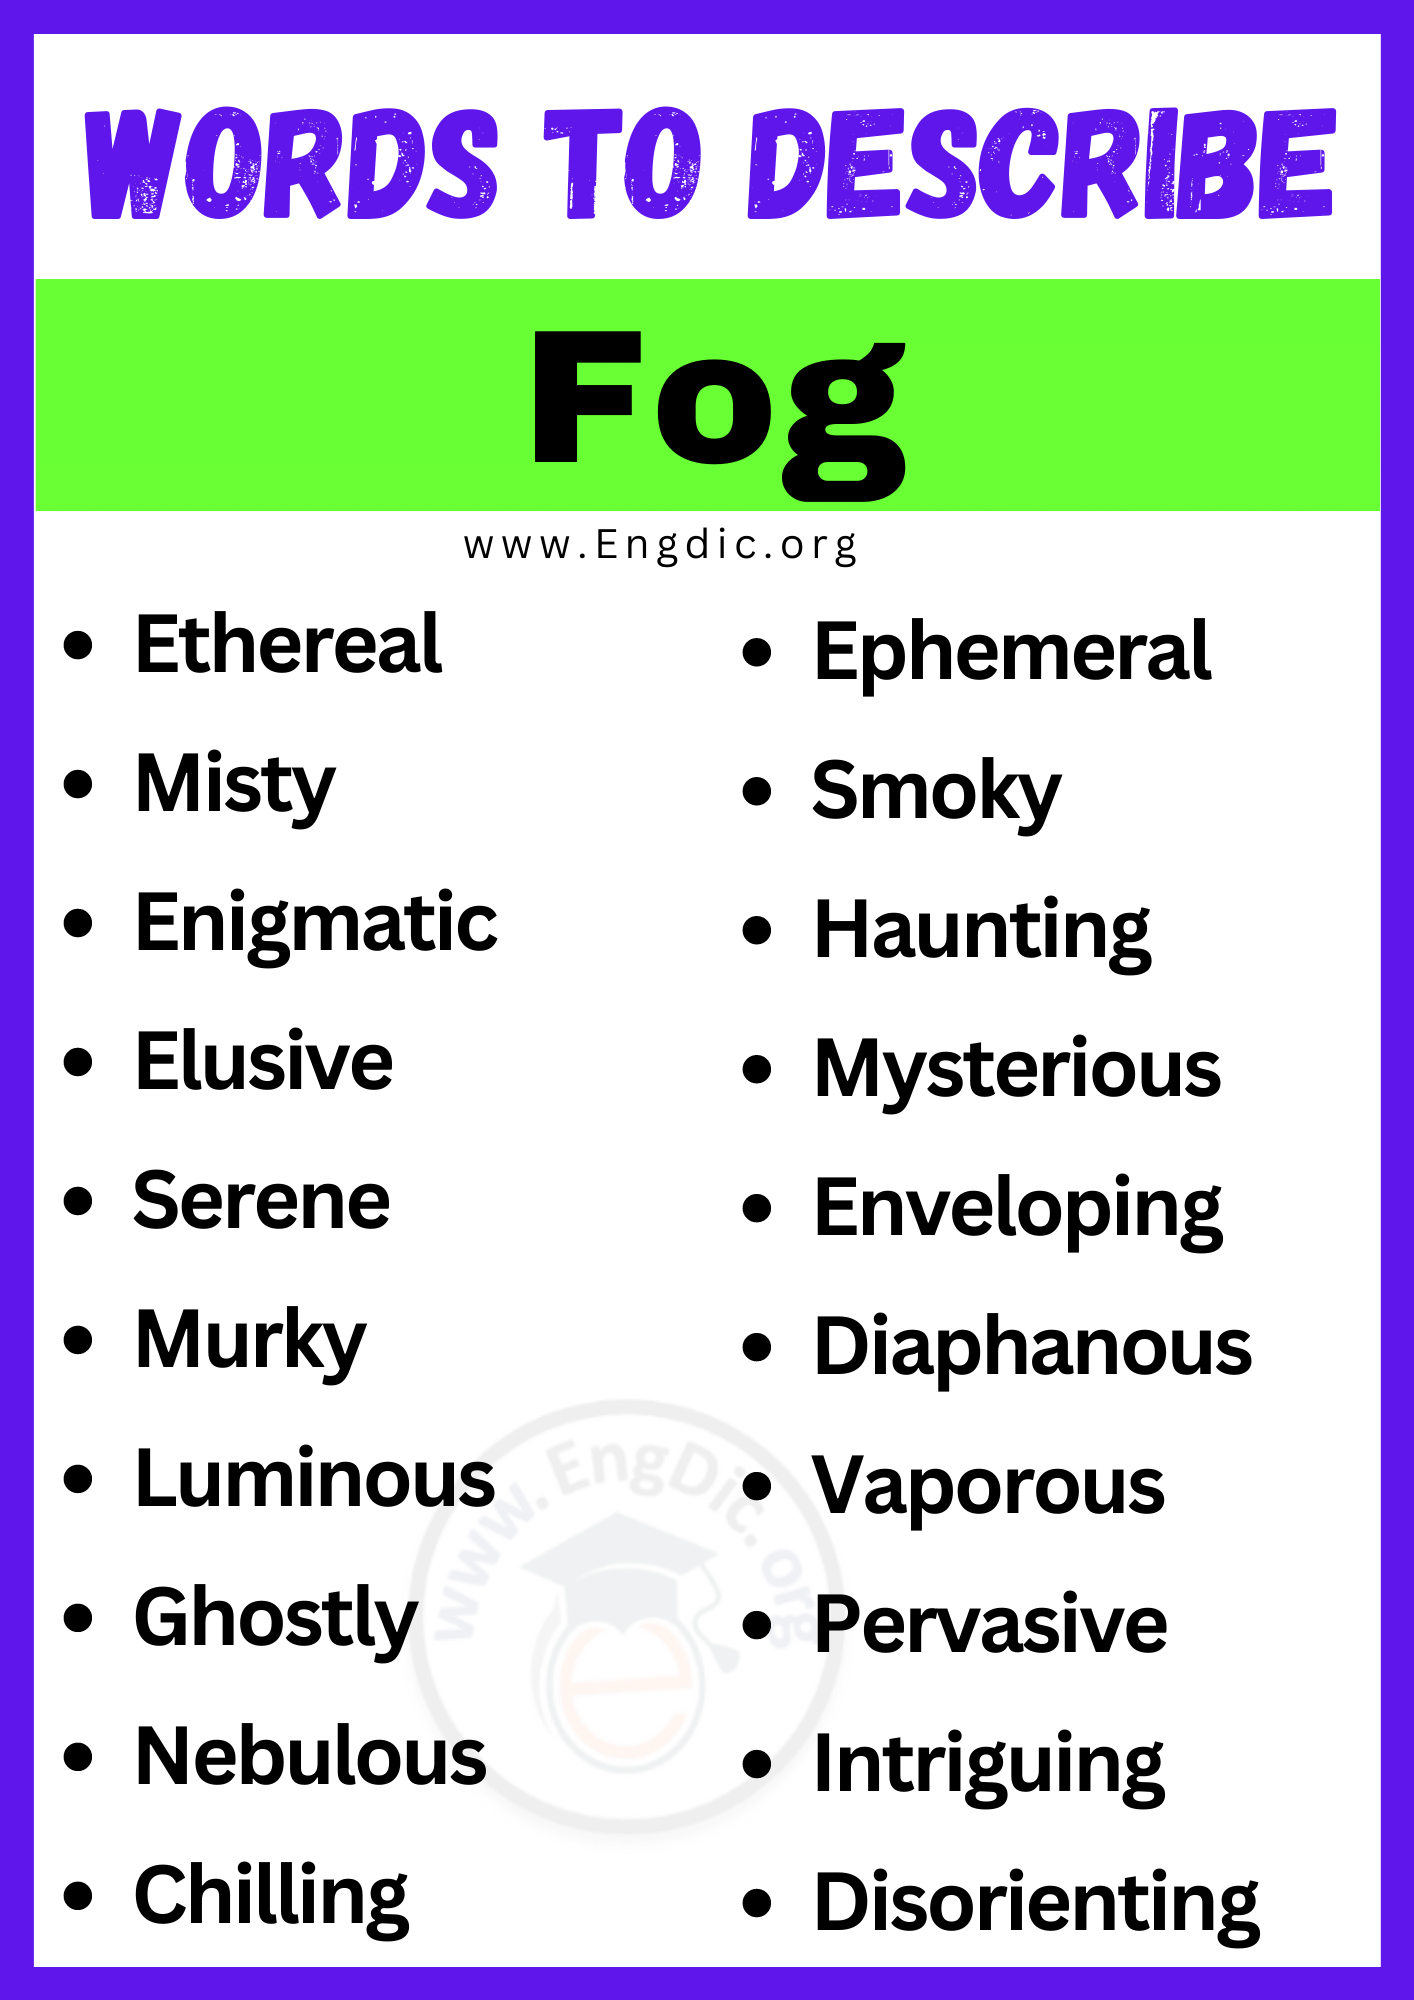 Words to Describe Fog